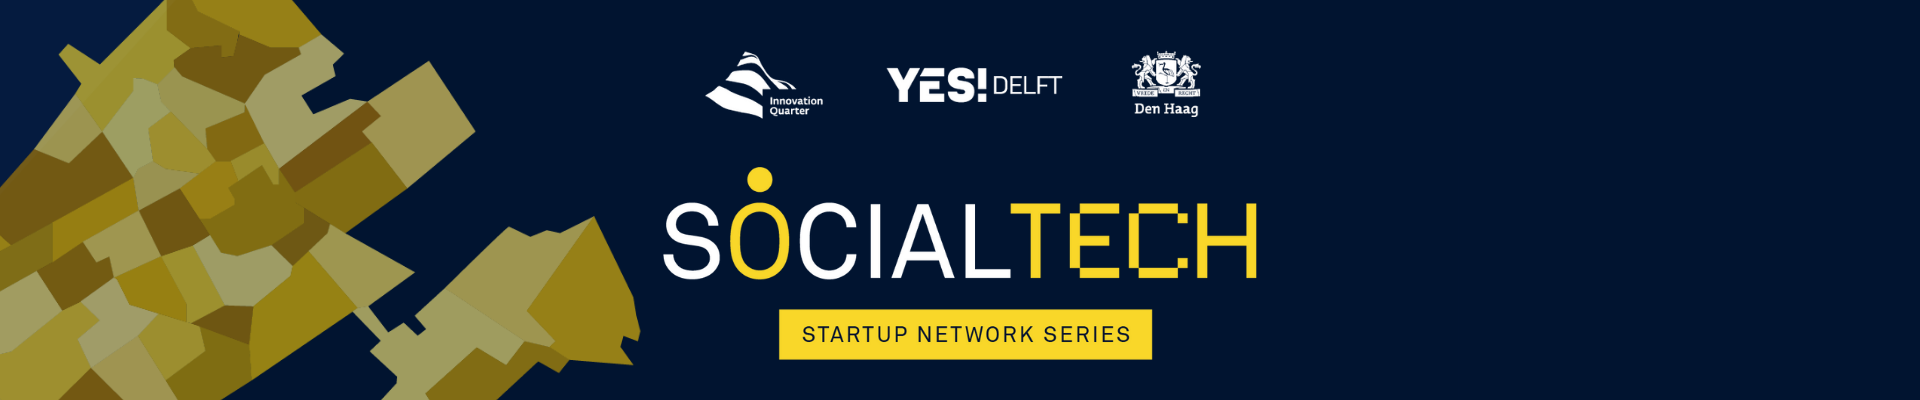 SocialTech Network Series Finals Event